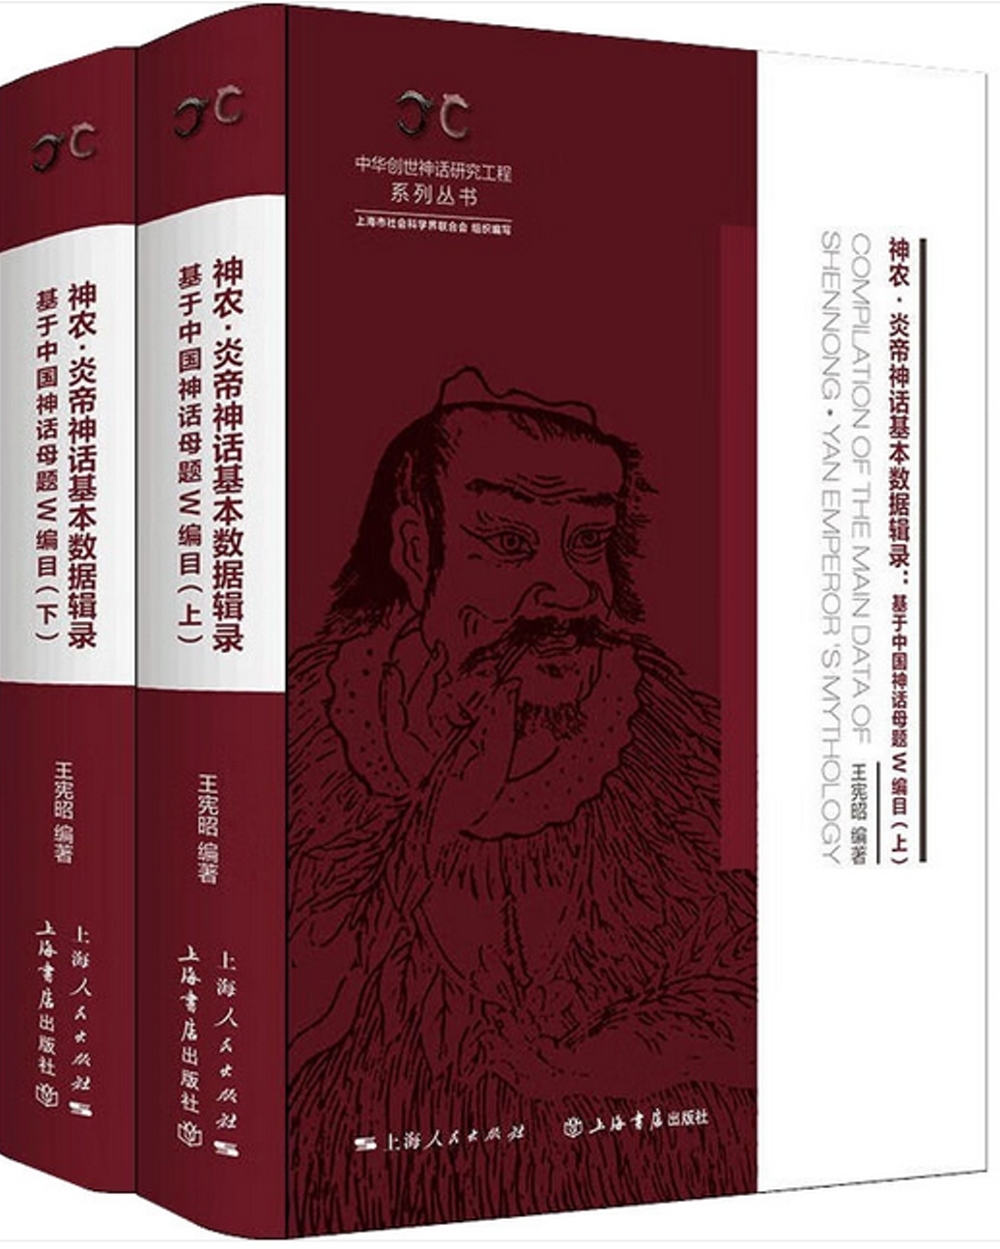 神農·炎帝神話基本數據輯錄：基於中國神話母題W編目(全二冊)